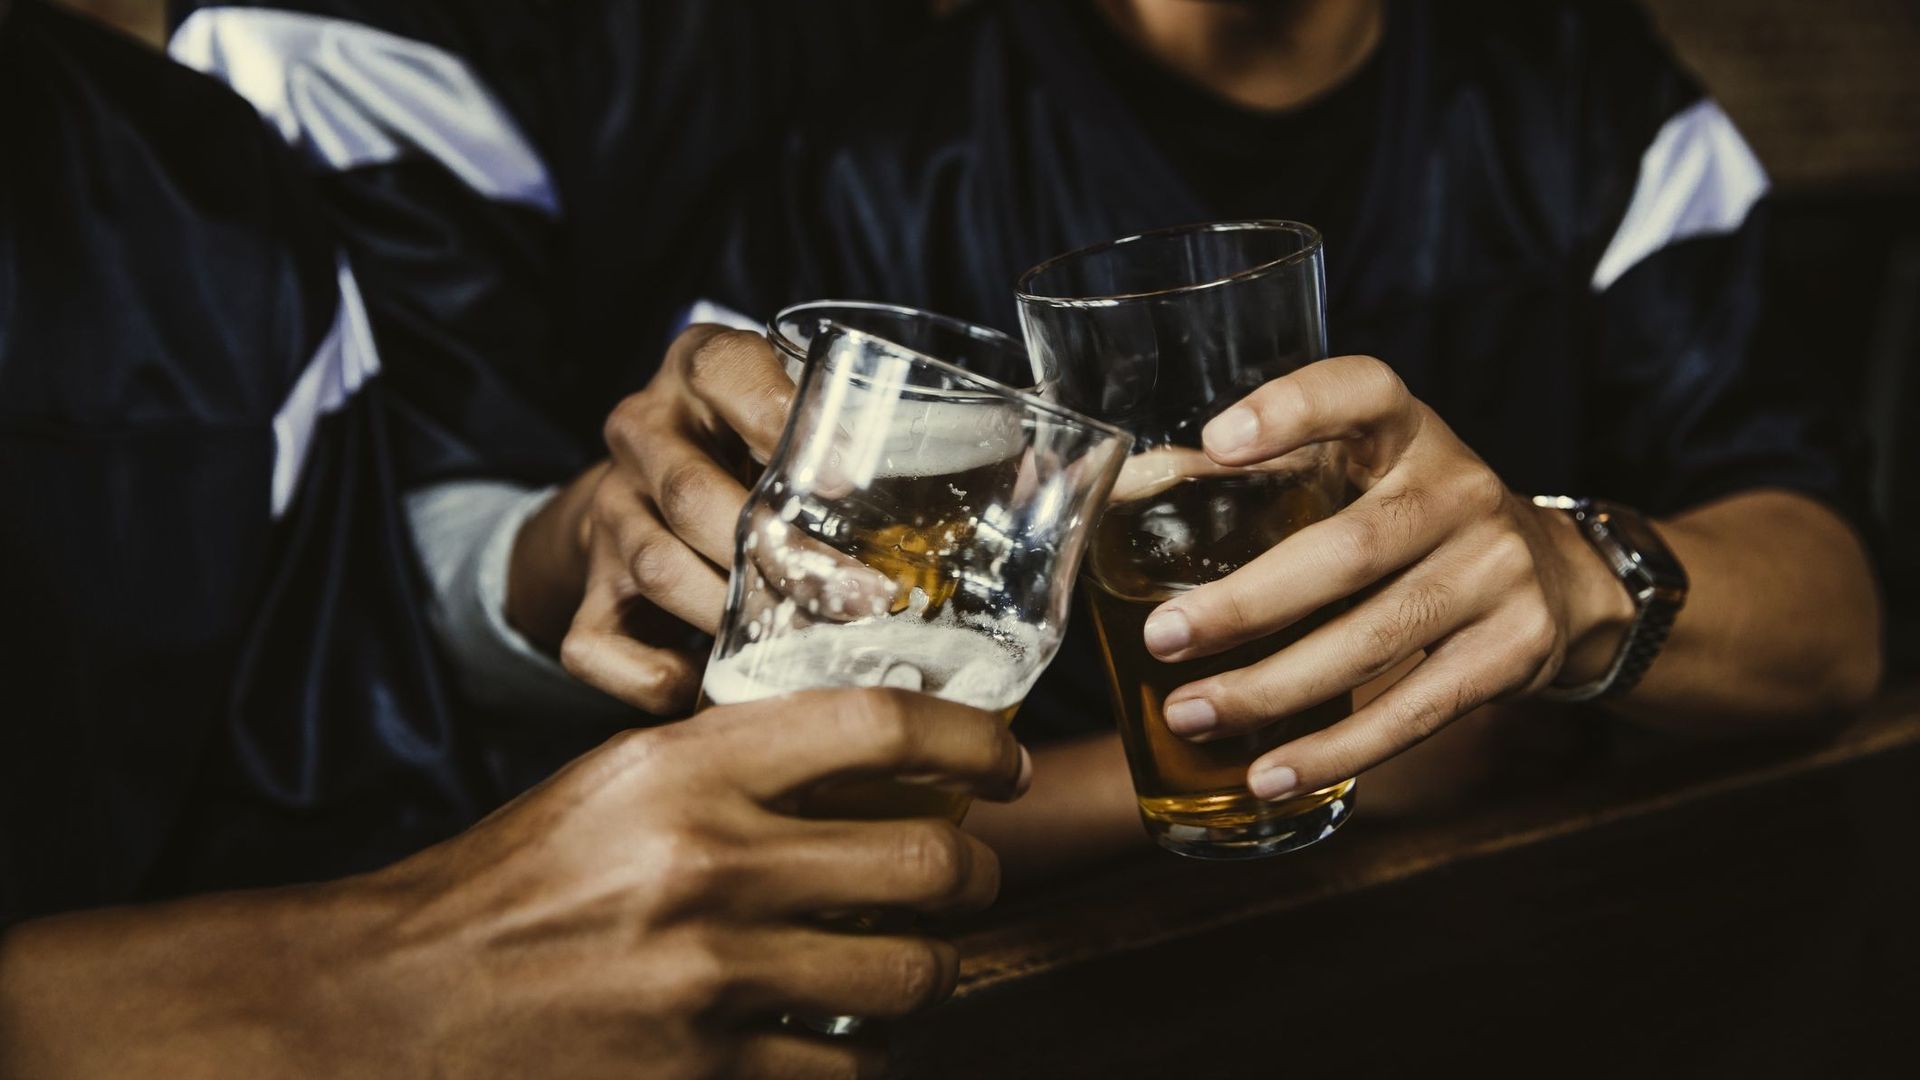 Combien de pintes bières faut-t-il boire pour sauver les bars et restaurants ?